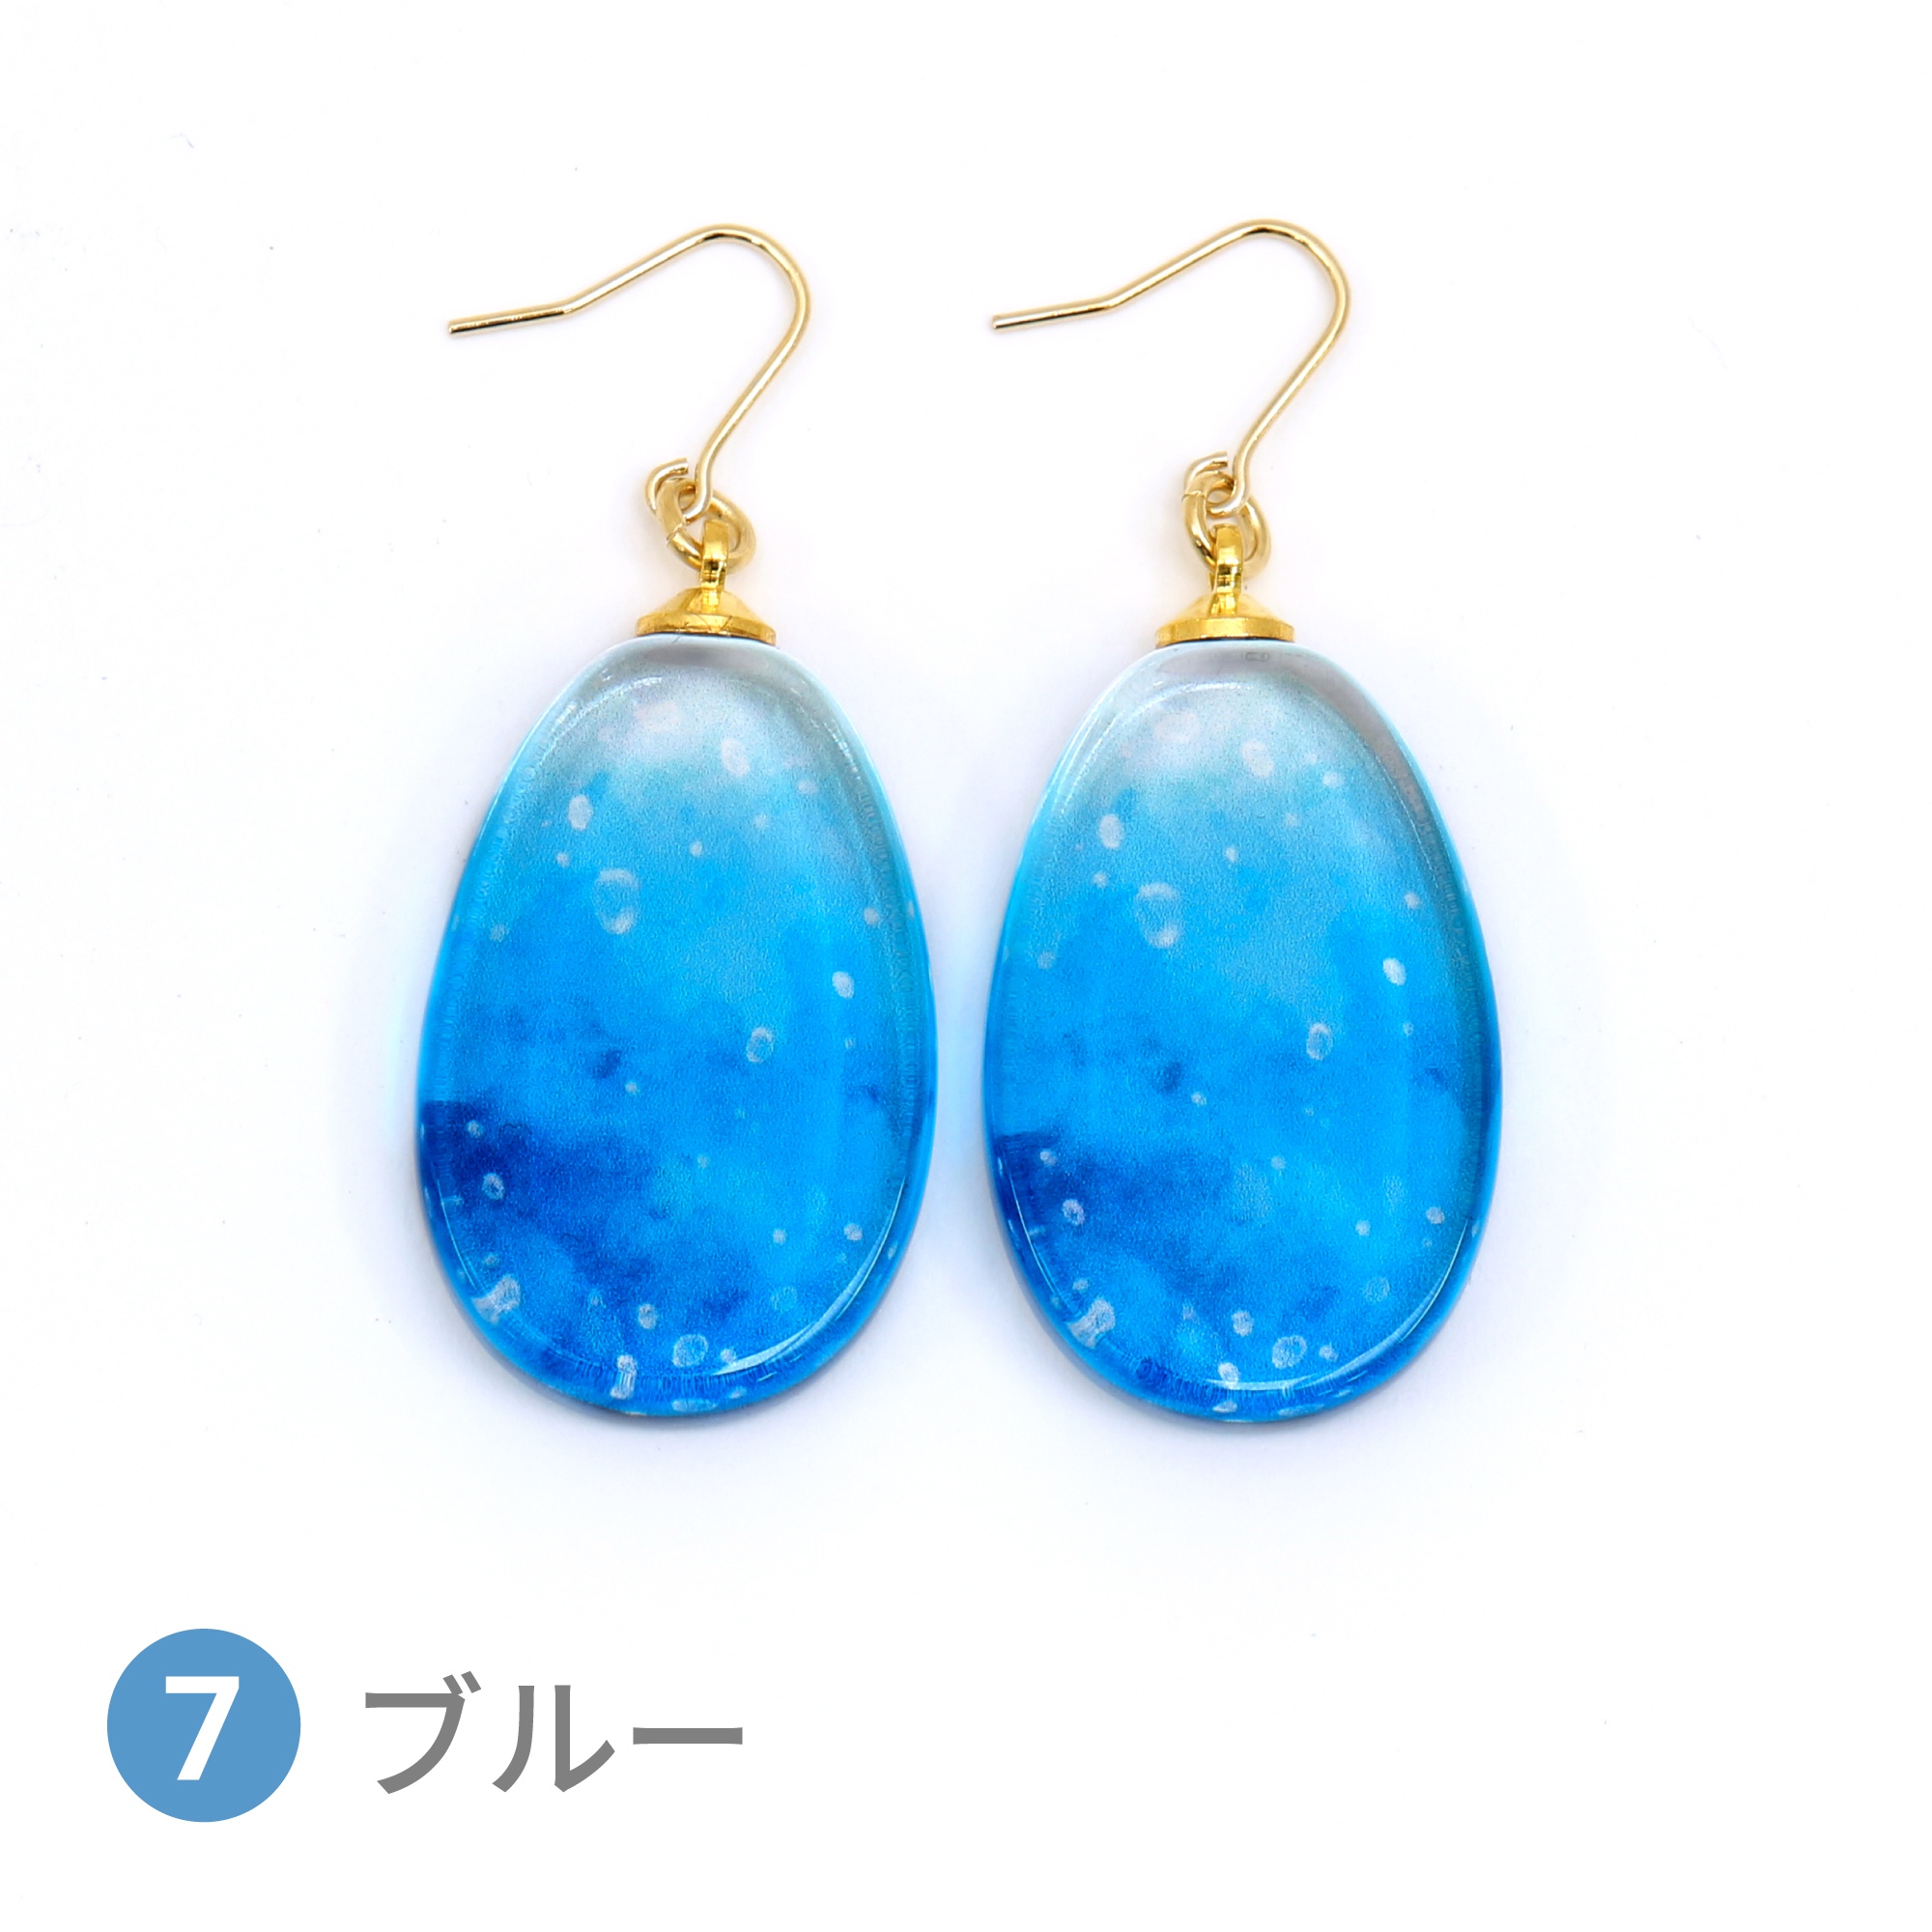 Glass accessories Pierced Earring SODA blue drop shape